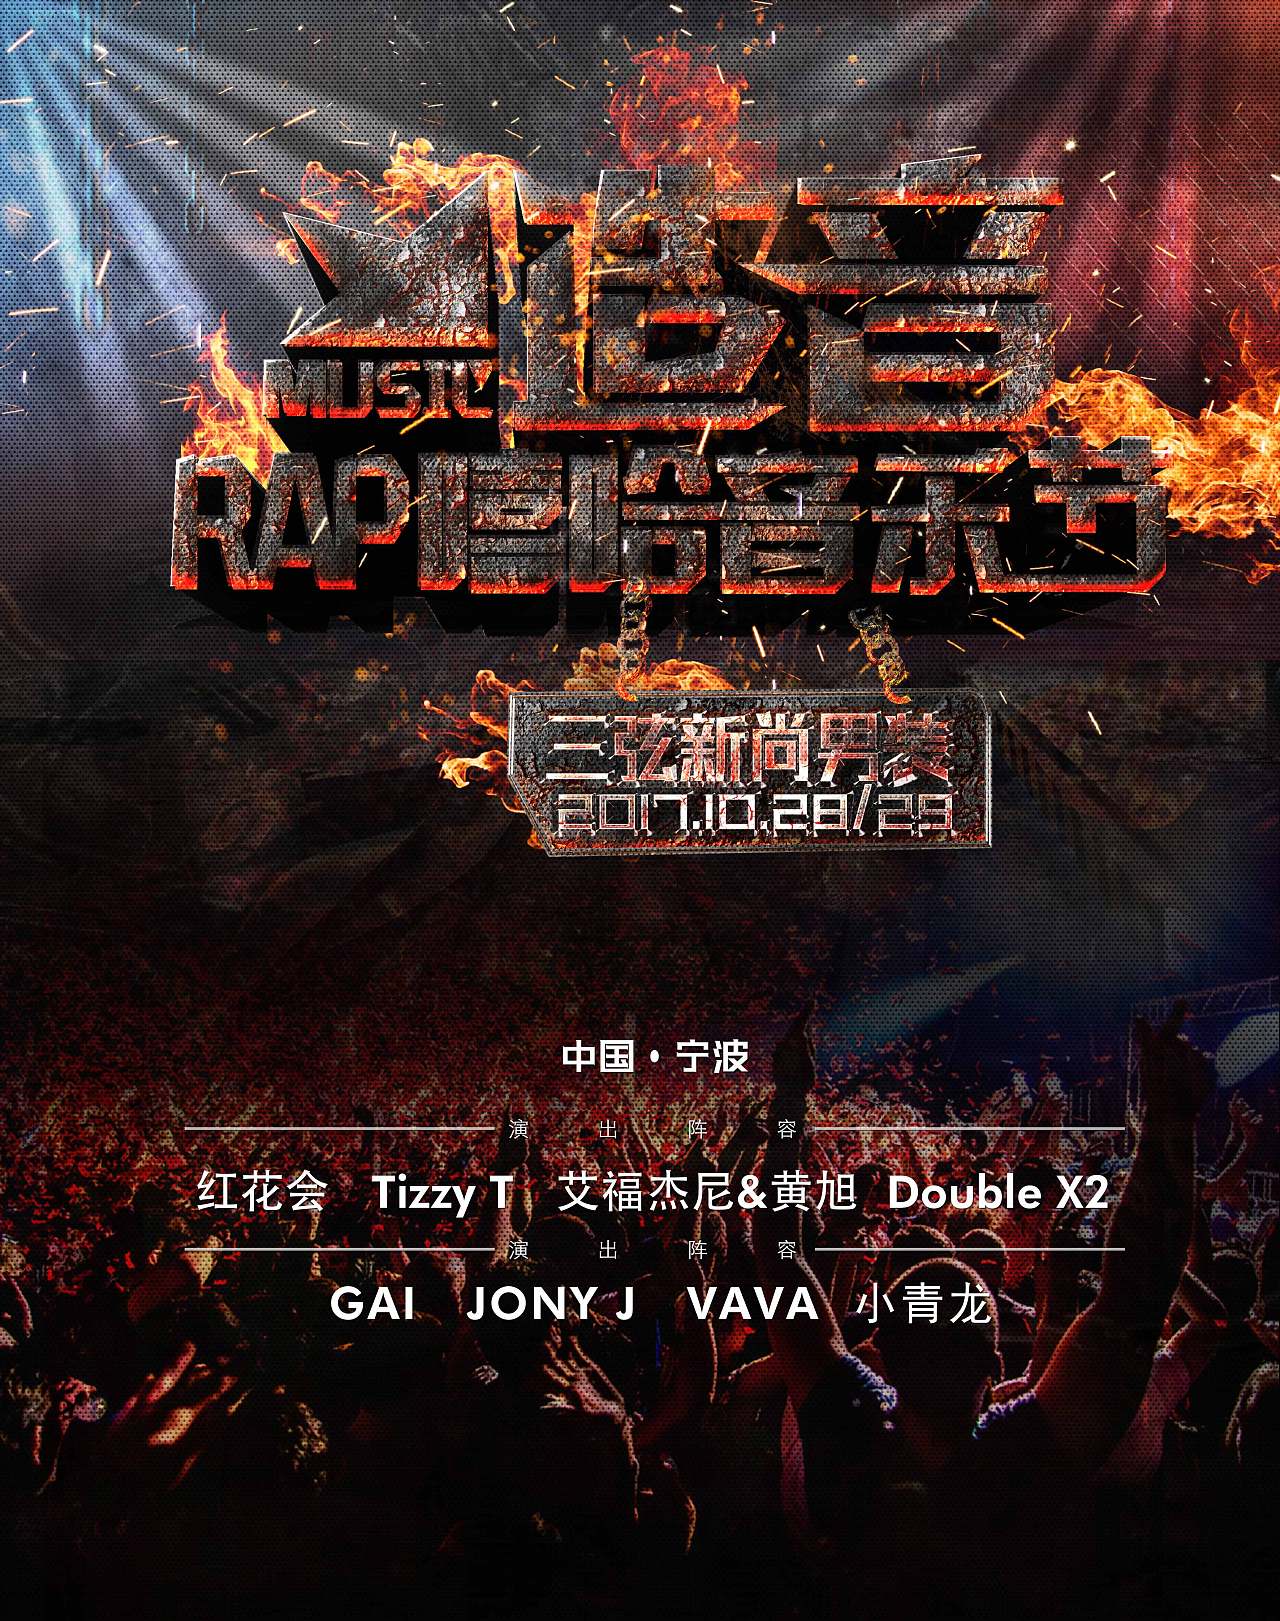 宁波造音嘻哈音乐节宣传海报设计